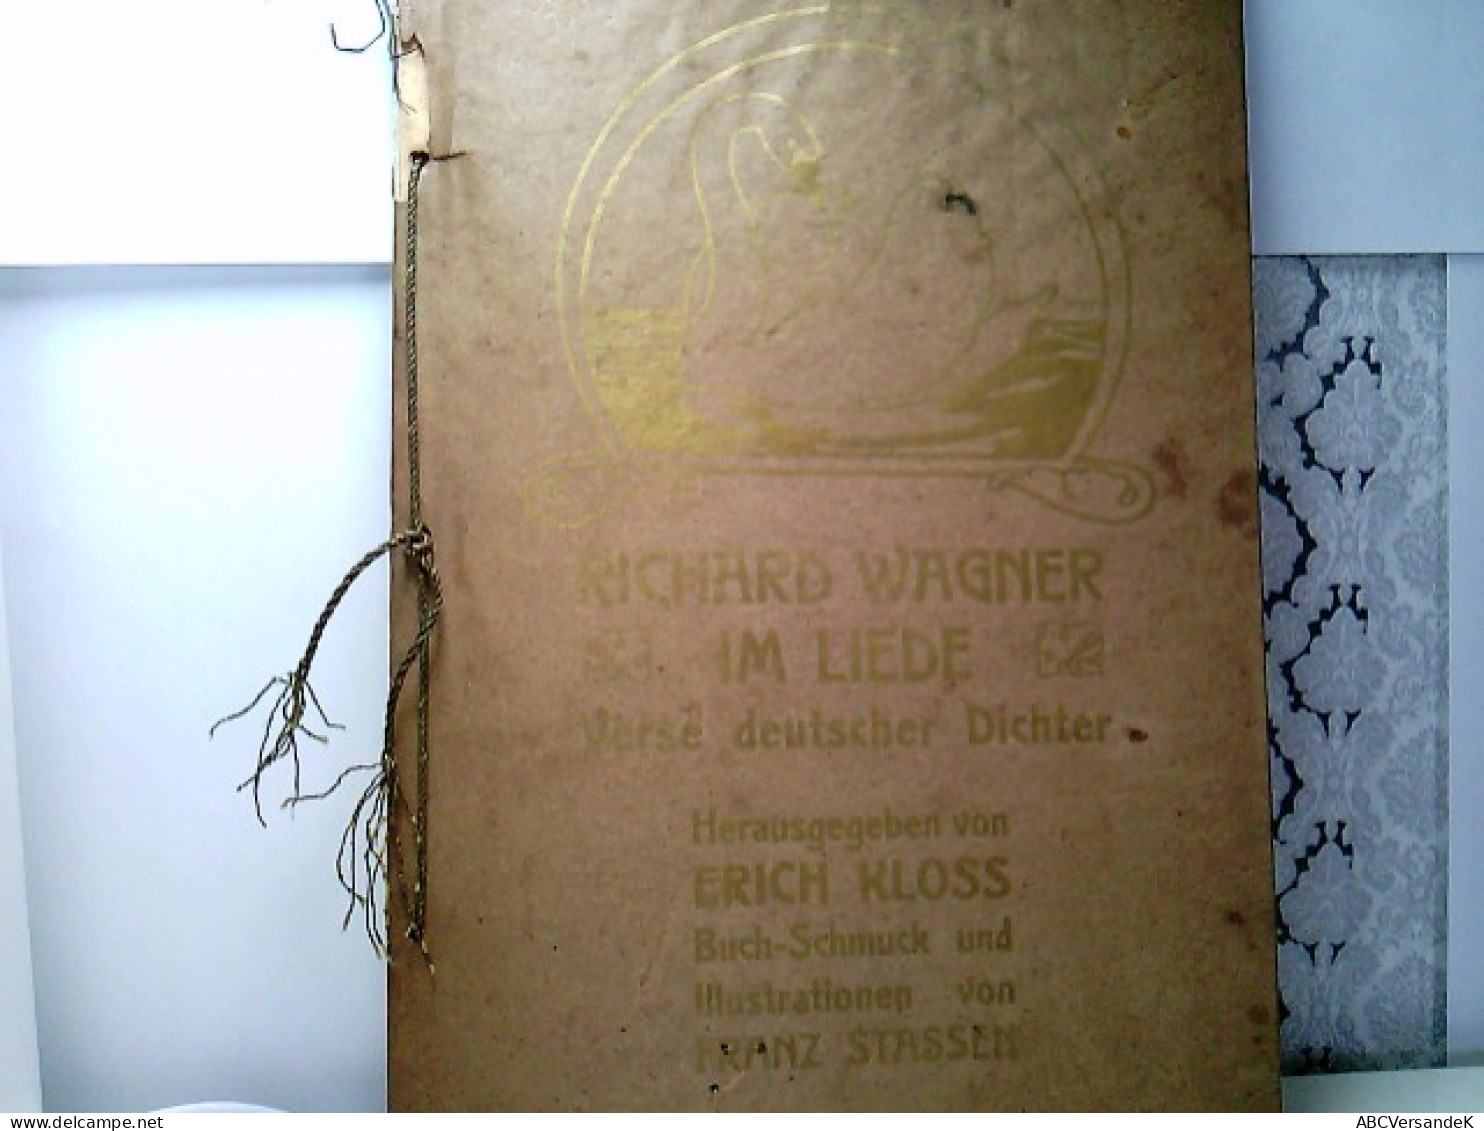 Richard Wagner Im Liede. Verse Deutscher Dichter. - German Authors